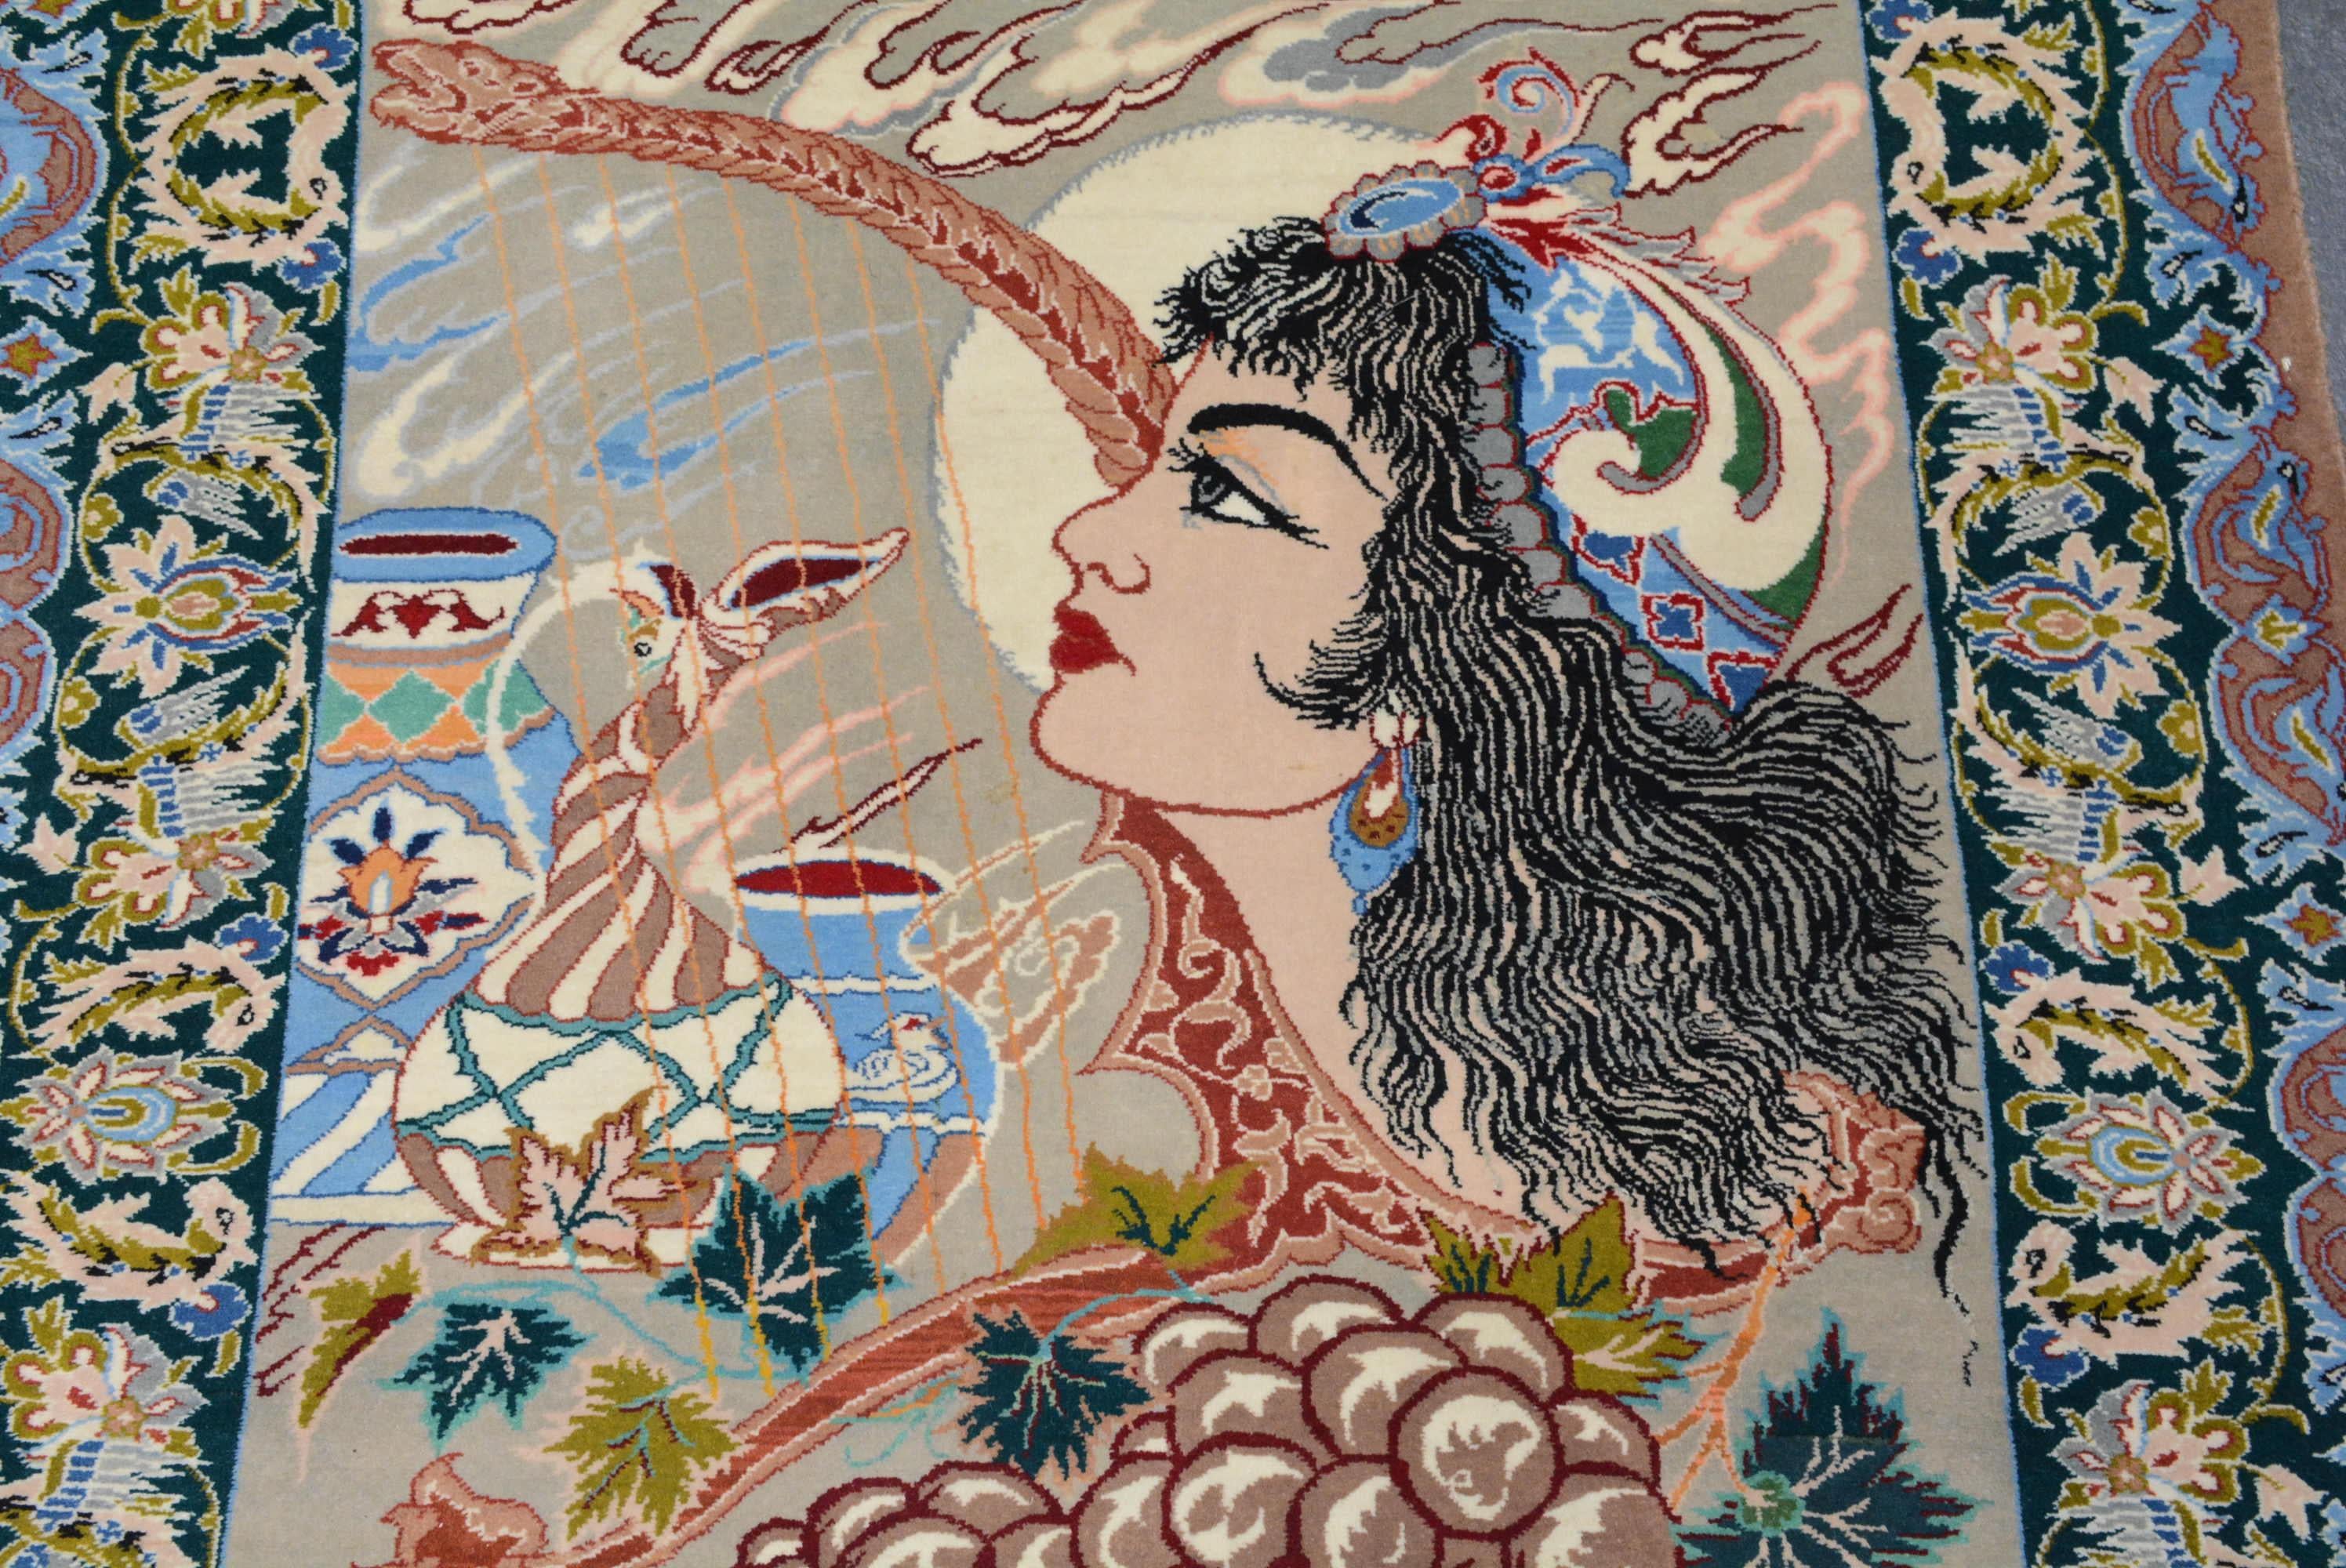 Die Designs der zeitgenössischen Teppiche aus Isfahan im Zentraliran basieren auf denen der Safawidenzeit (1501 - 1736 n. Chr.).  Das beliebteste Muster hat ein zentrales rundes Medaillon auf einem elegant geformten Feld, das mit wirbelnden